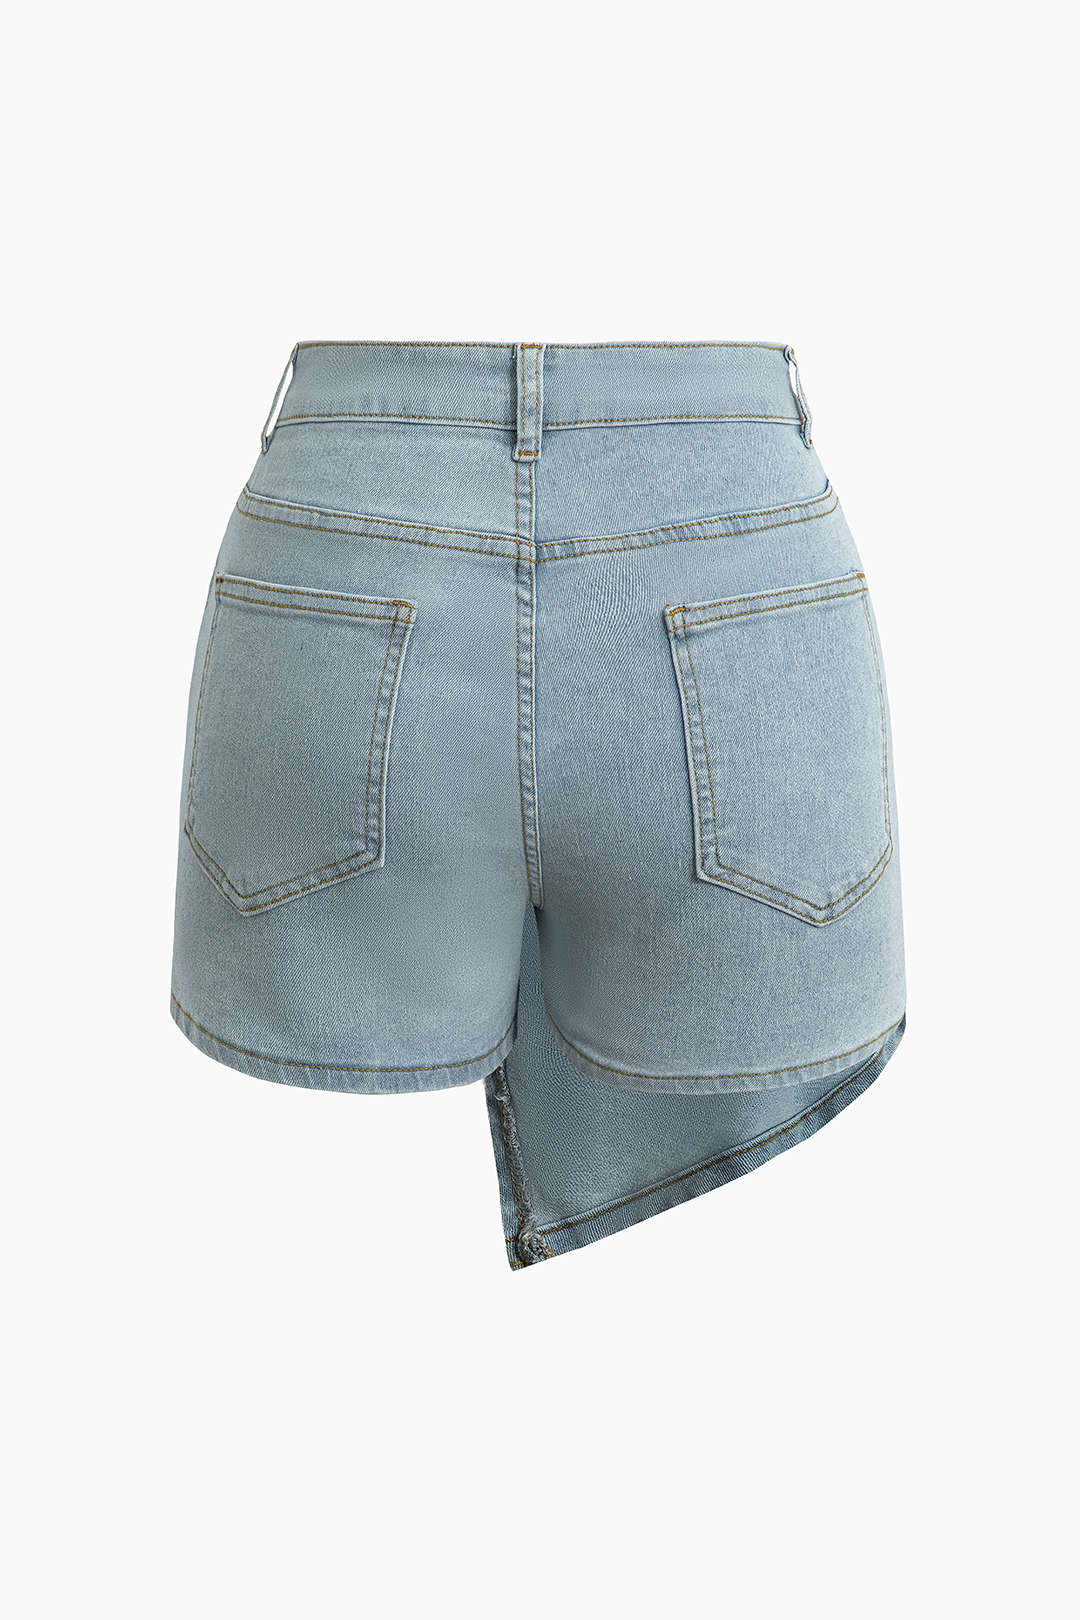 Wrap Denim Shorts